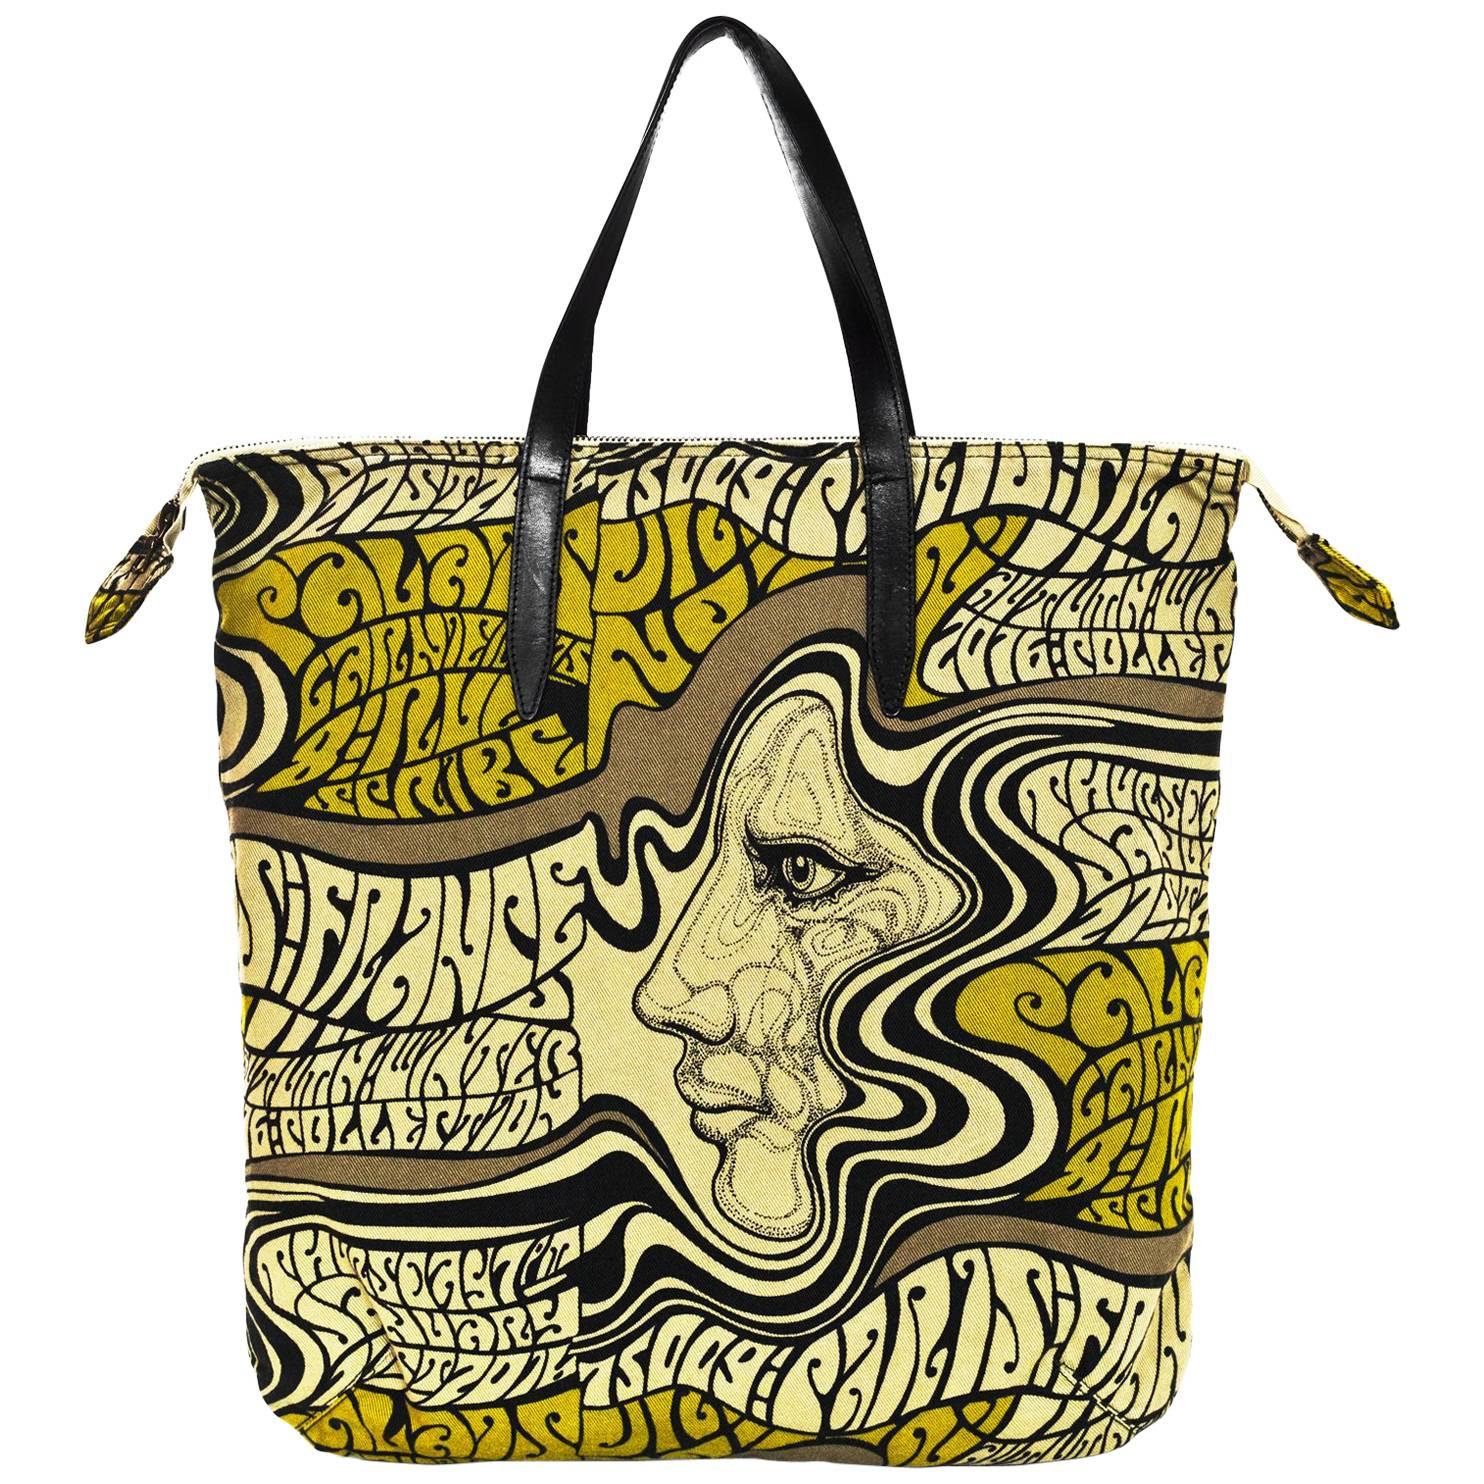 Dries Van Noten 2016 Psychedelic Printed Tote Bag